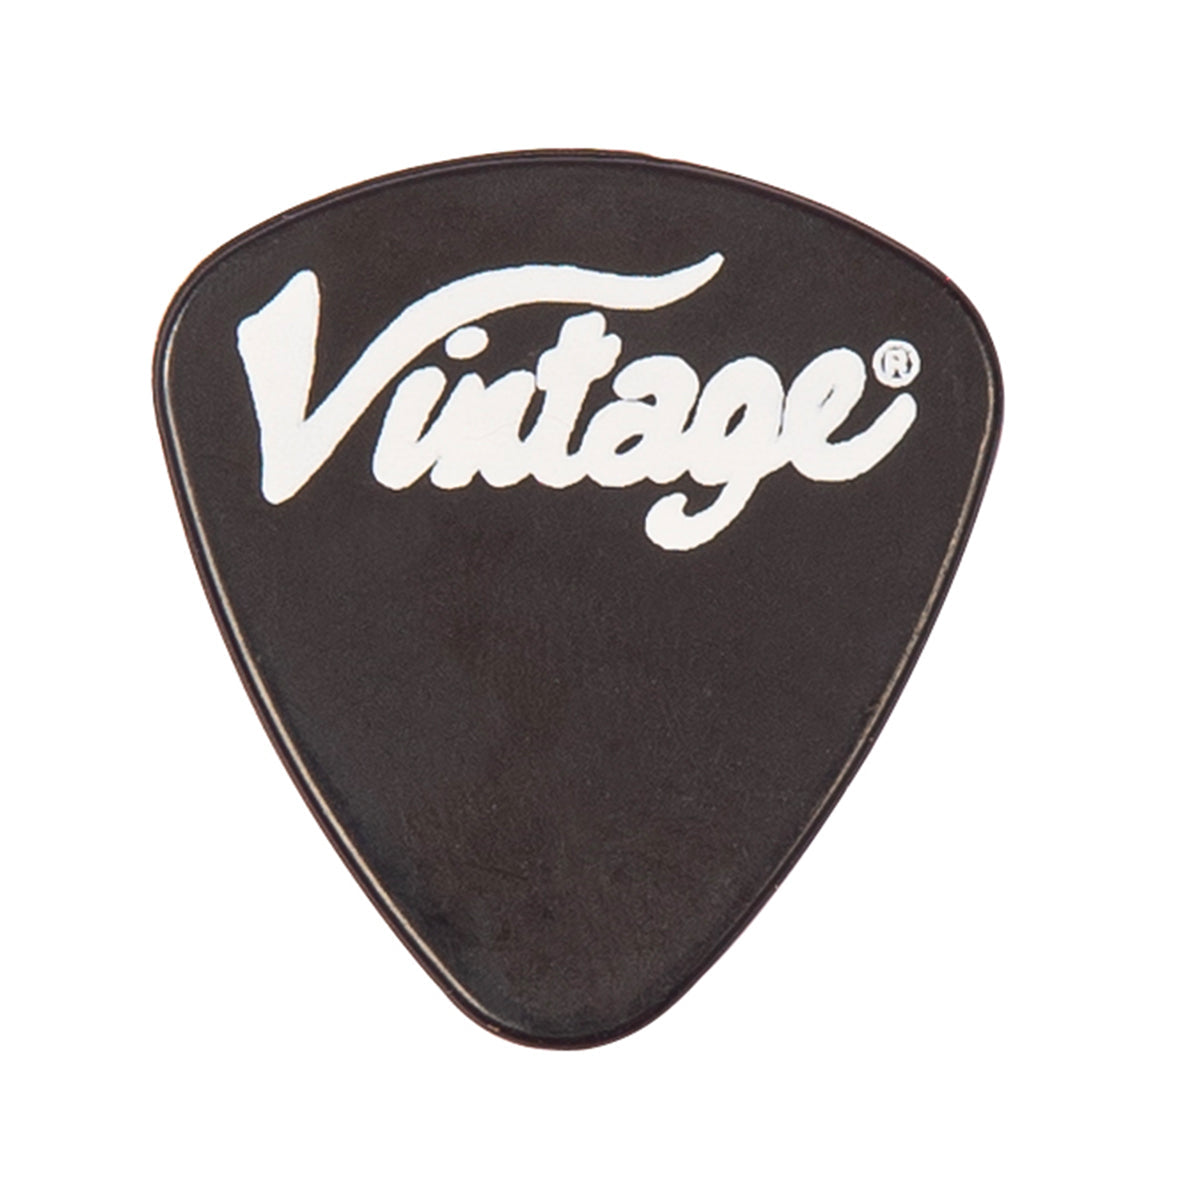 Vintage V495 Coaster Series 5-String Bass Guitar Pack ~ Boulevard Black, Bass Guitar Packs for sale at Richards Guitars.